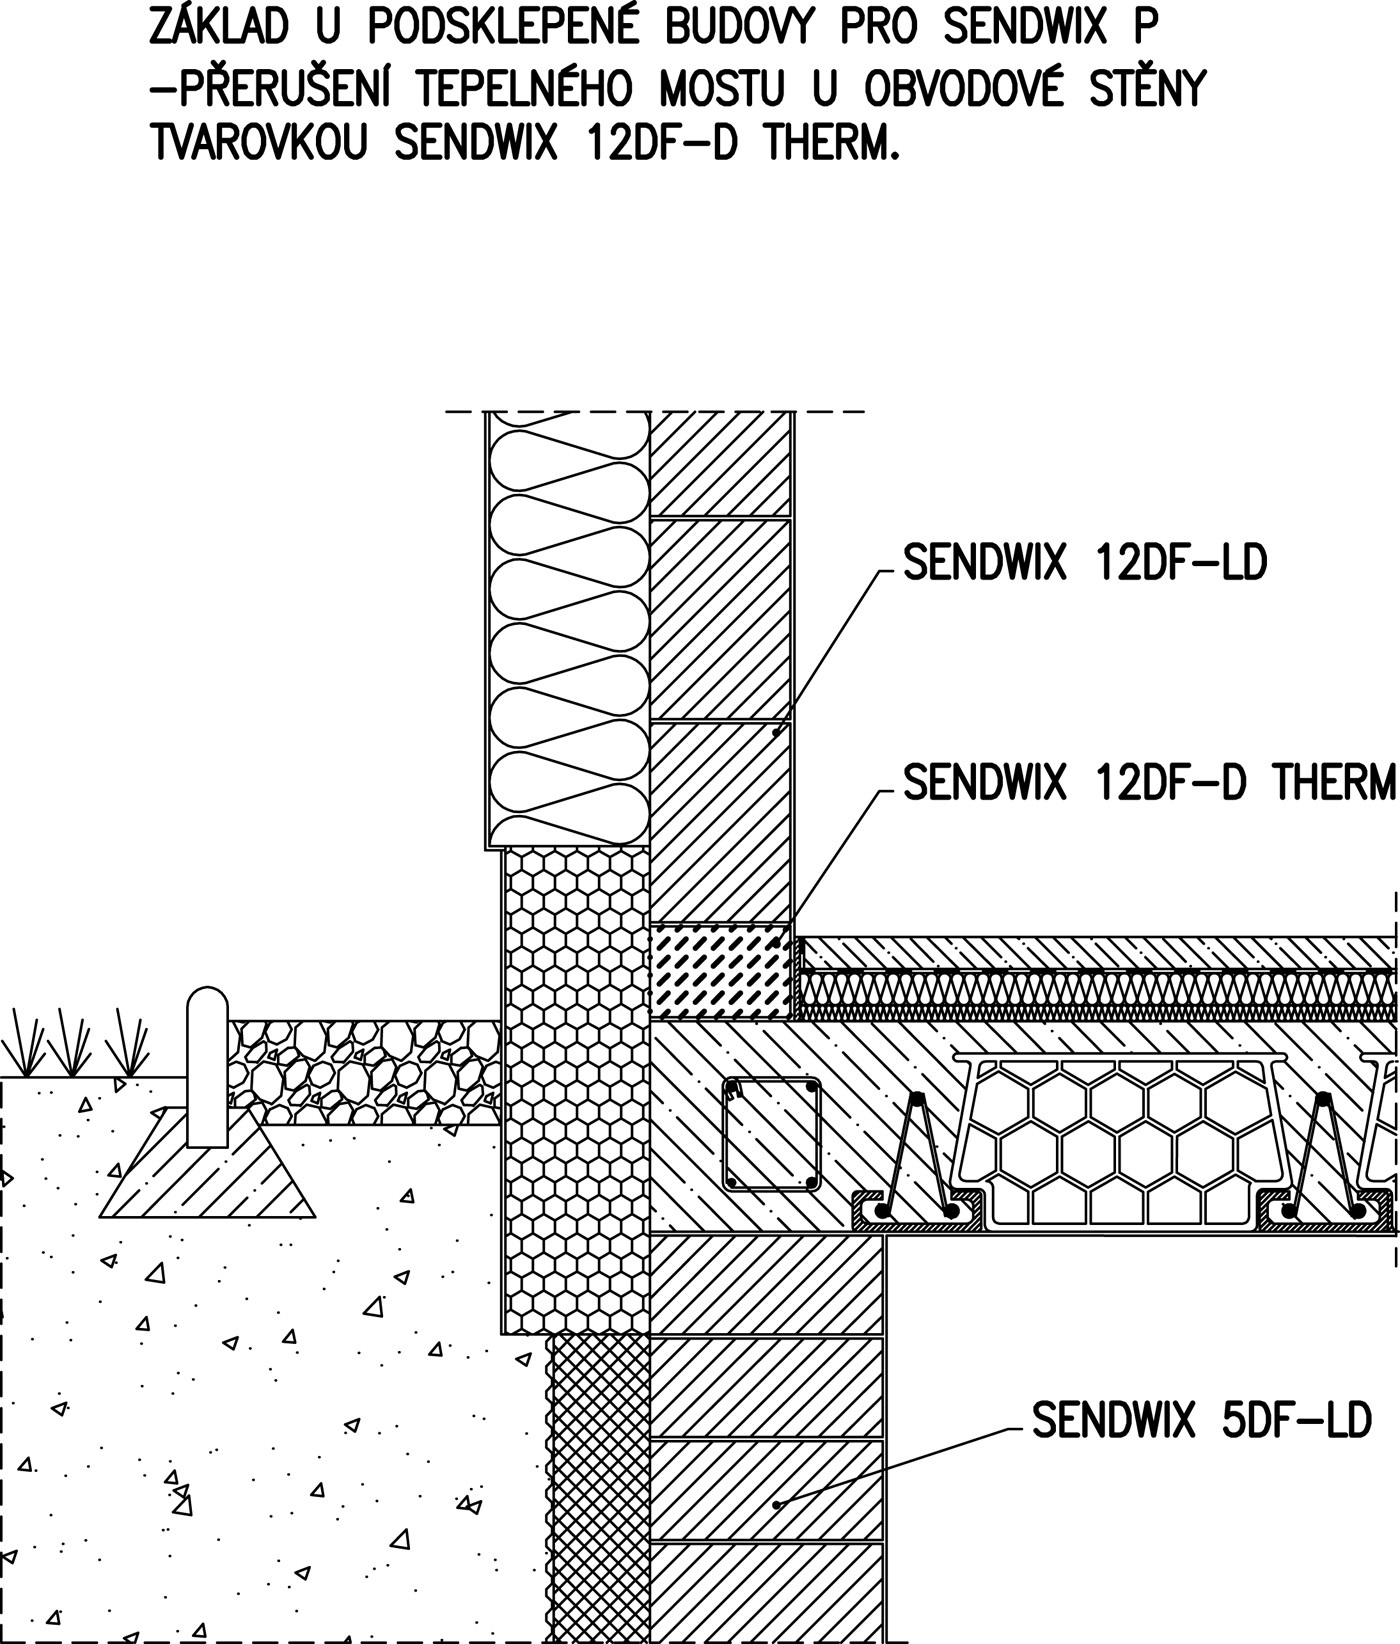 Nové řešení s přerušením tepelného mostu u obvodové stěny tvarovkou SENDWIX 12DF-D THERM, podsklepená budova, SENDWIX P